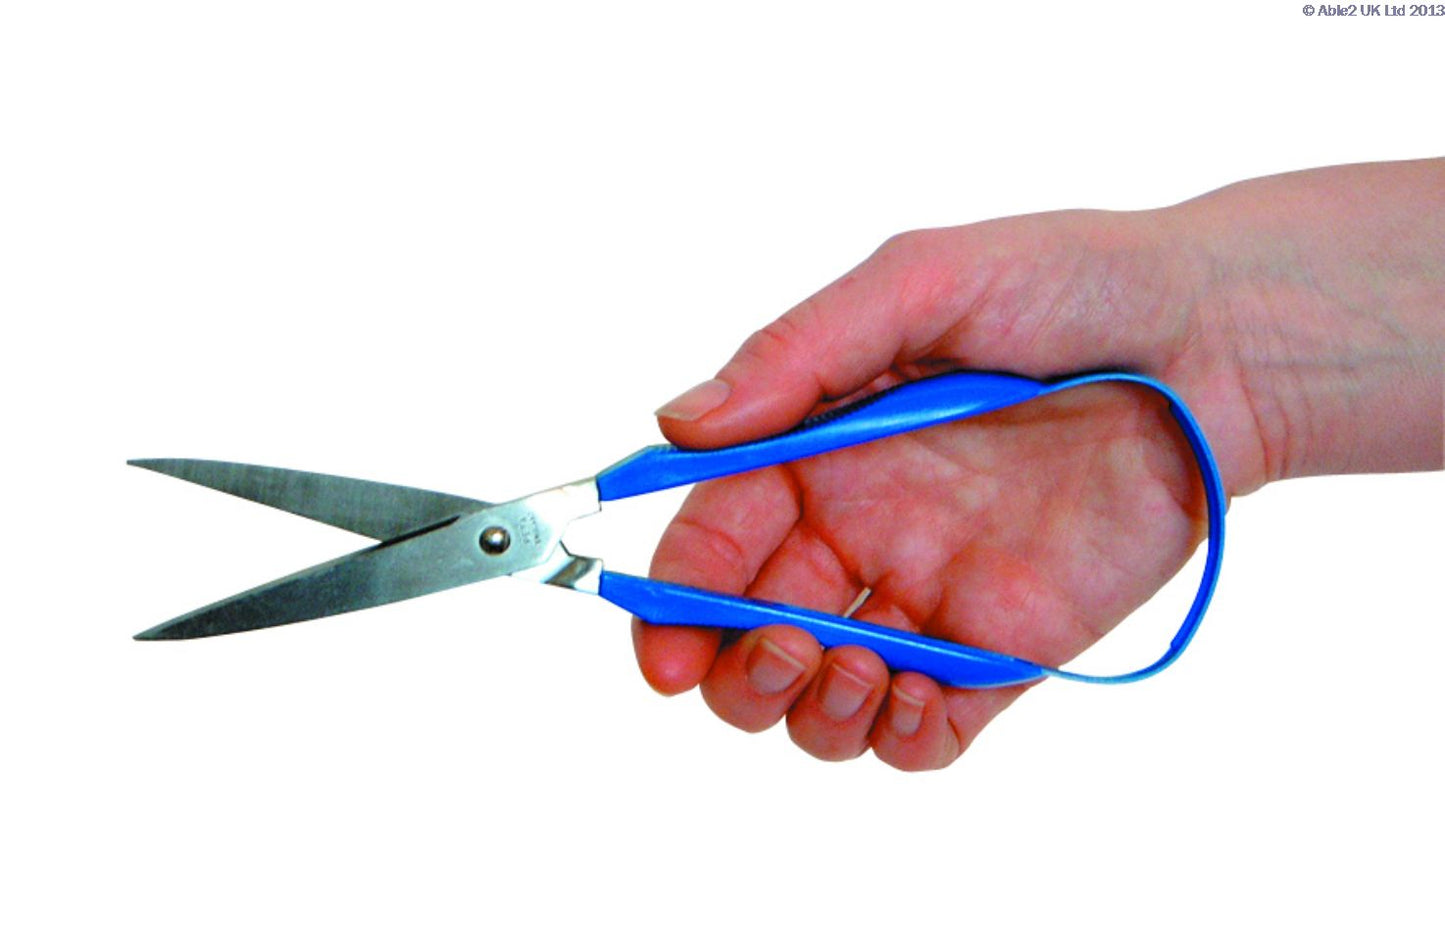 loop-scissors-pointed-end-75mm